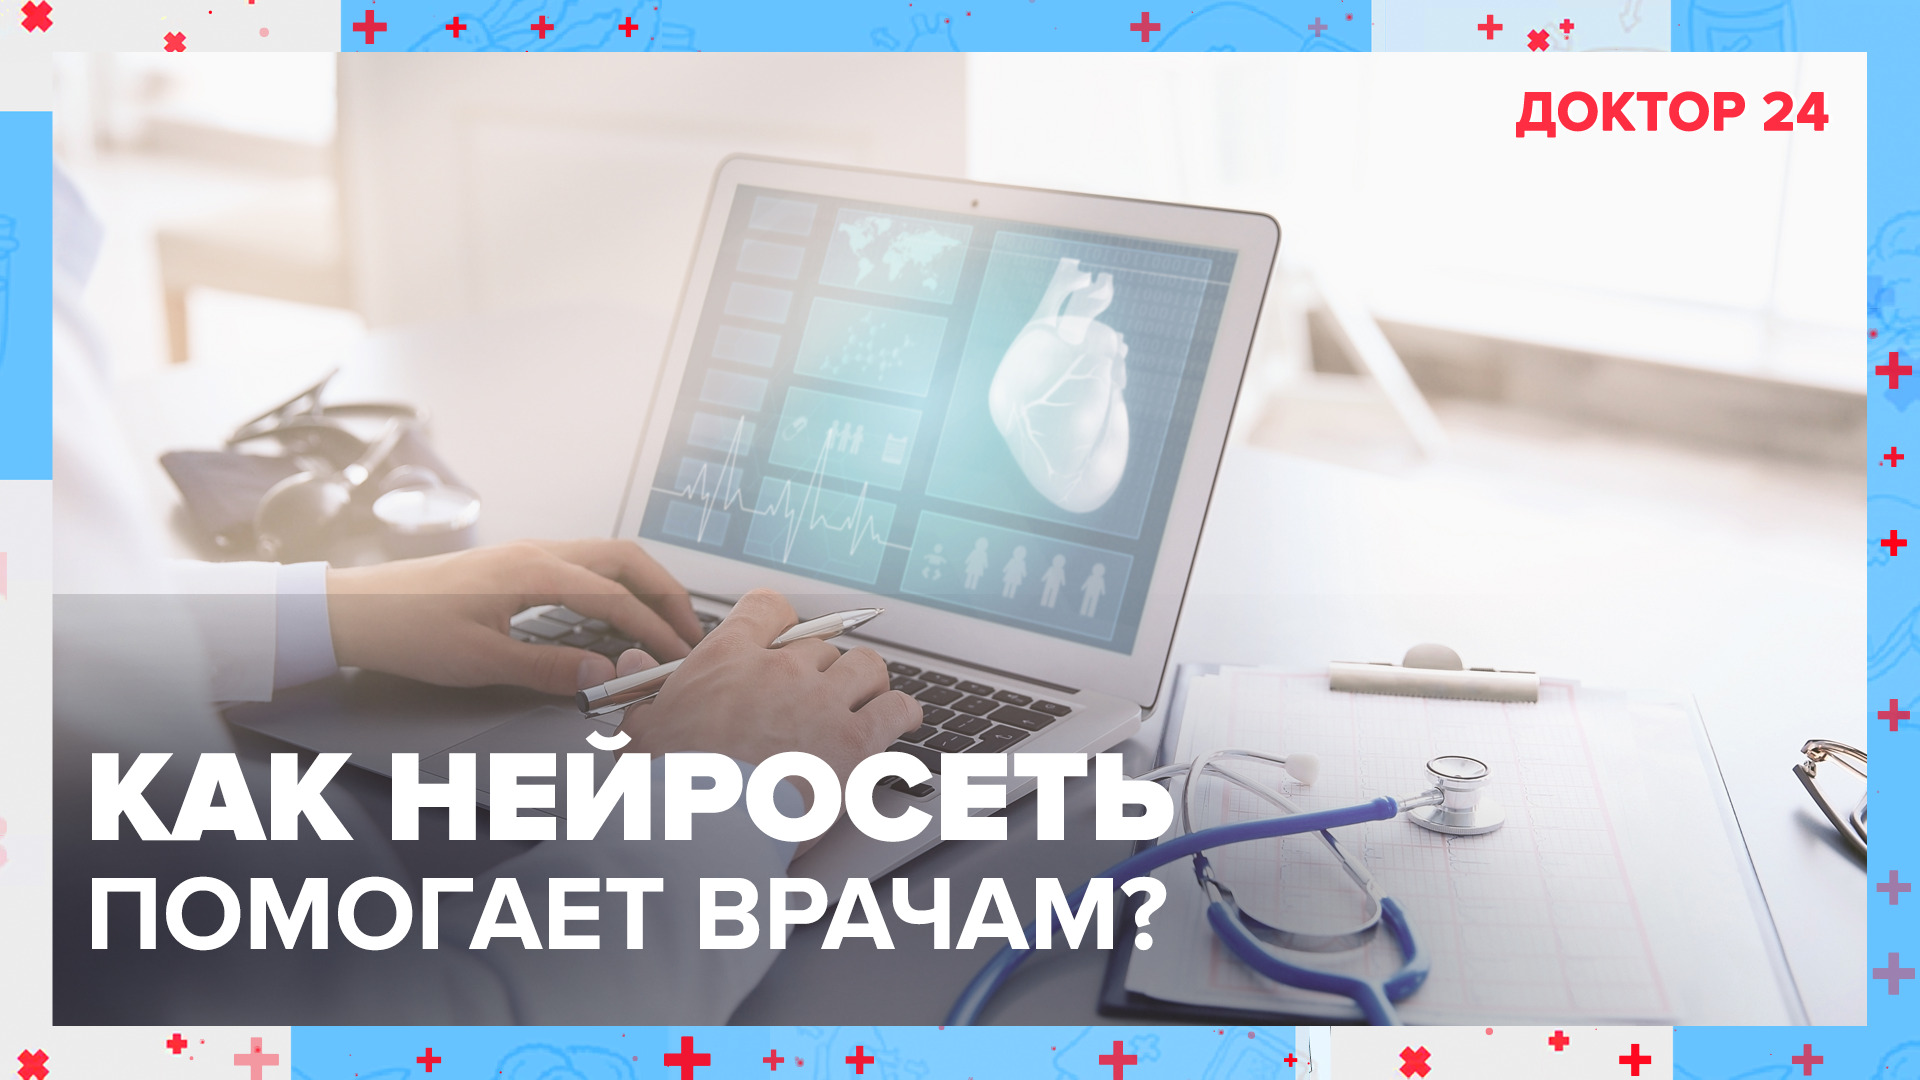 ВТОРОЕ МНЕНИЕ в московской медицине | Доктор 24